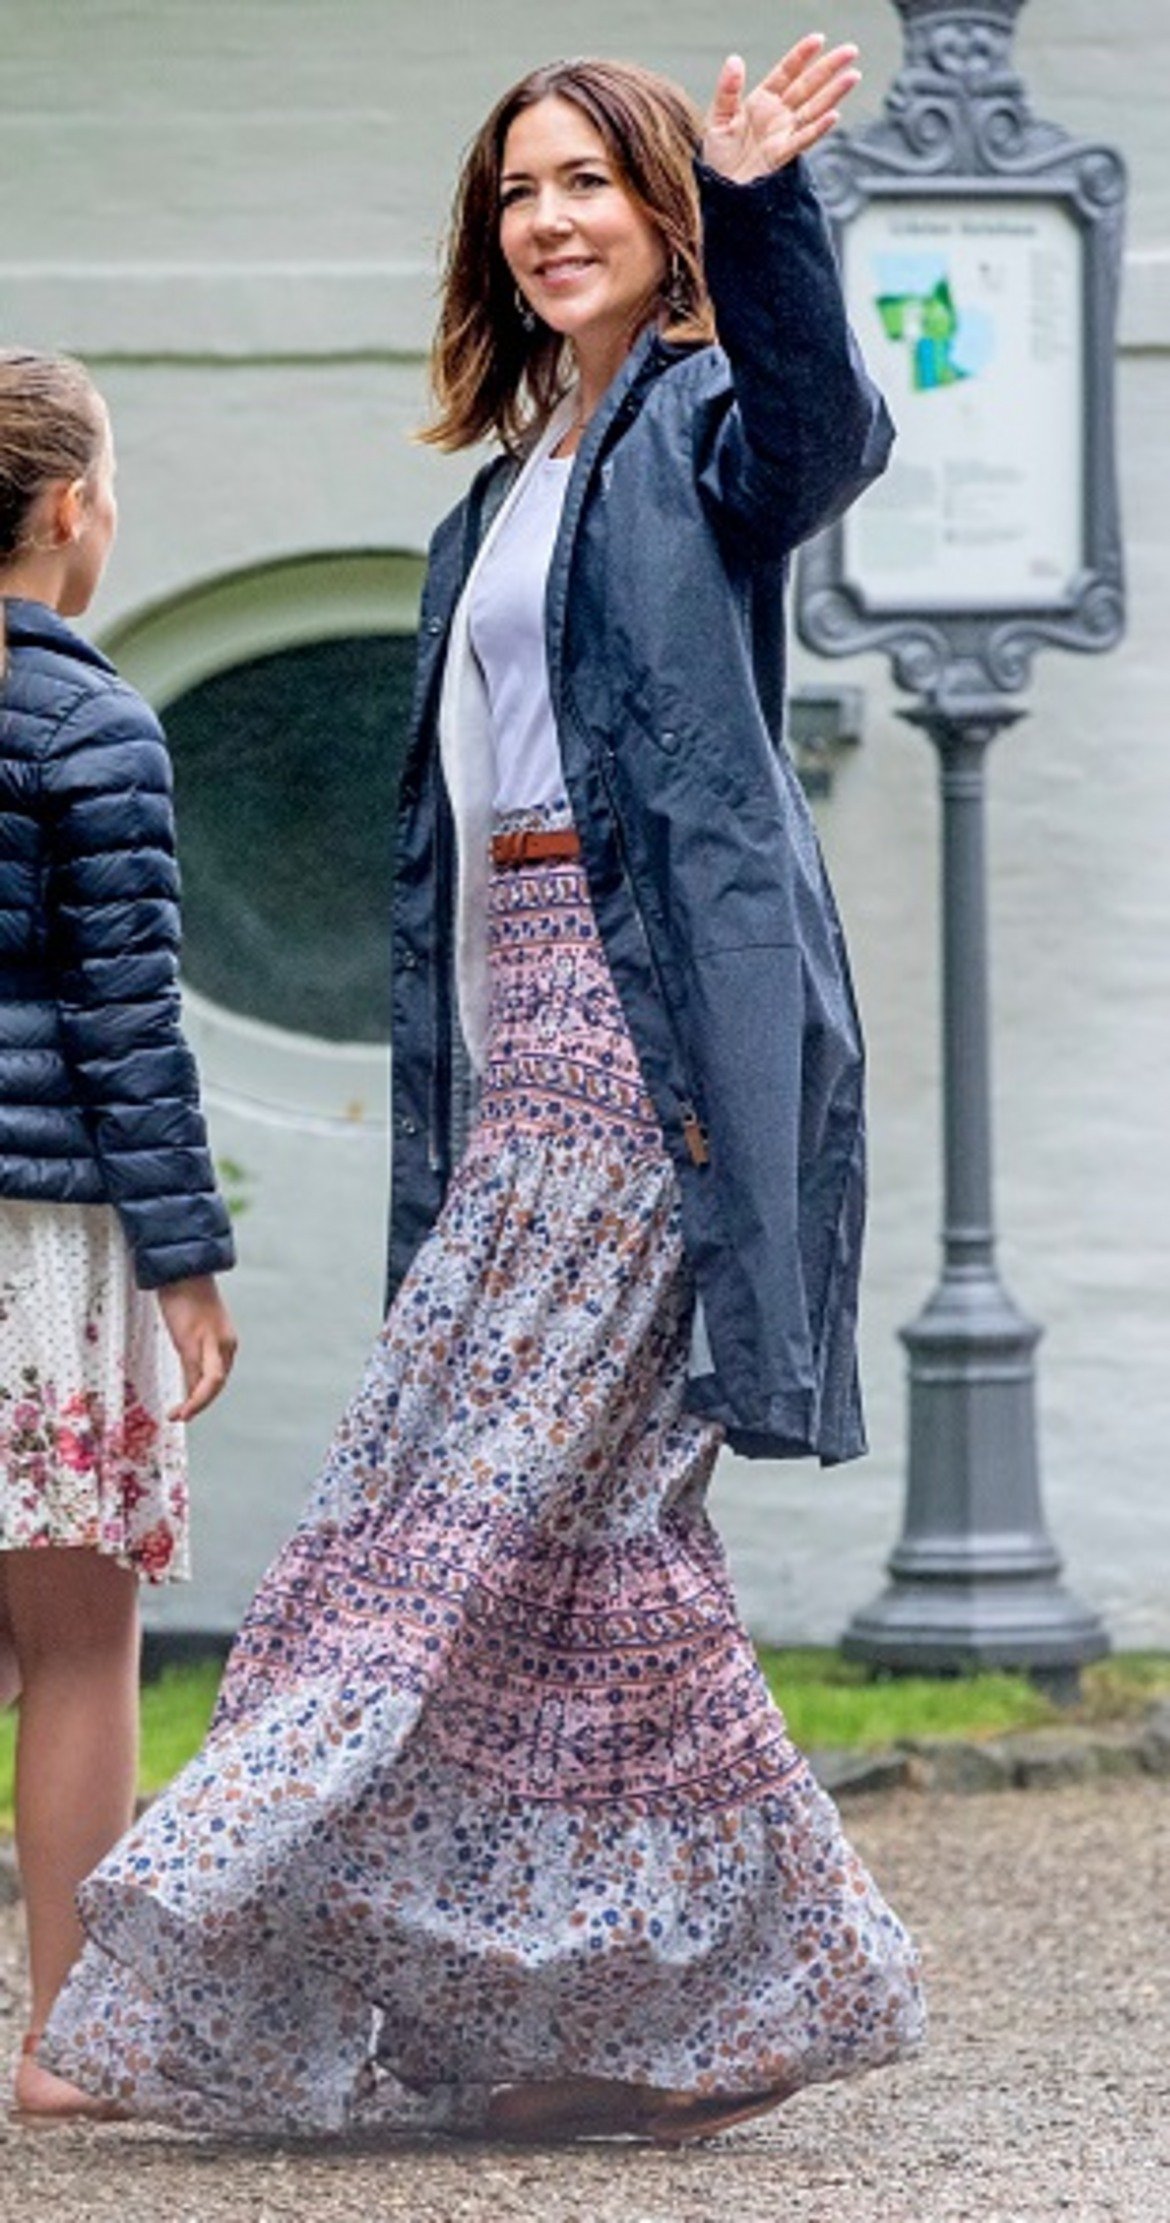 Принцеса на Дания - Мари - е доказателство, че дори и кралските особи ходят небрежно облечени. Все пак дългата й шарена пола и голямо дънково яке изглеждат доста интересно и стилно.